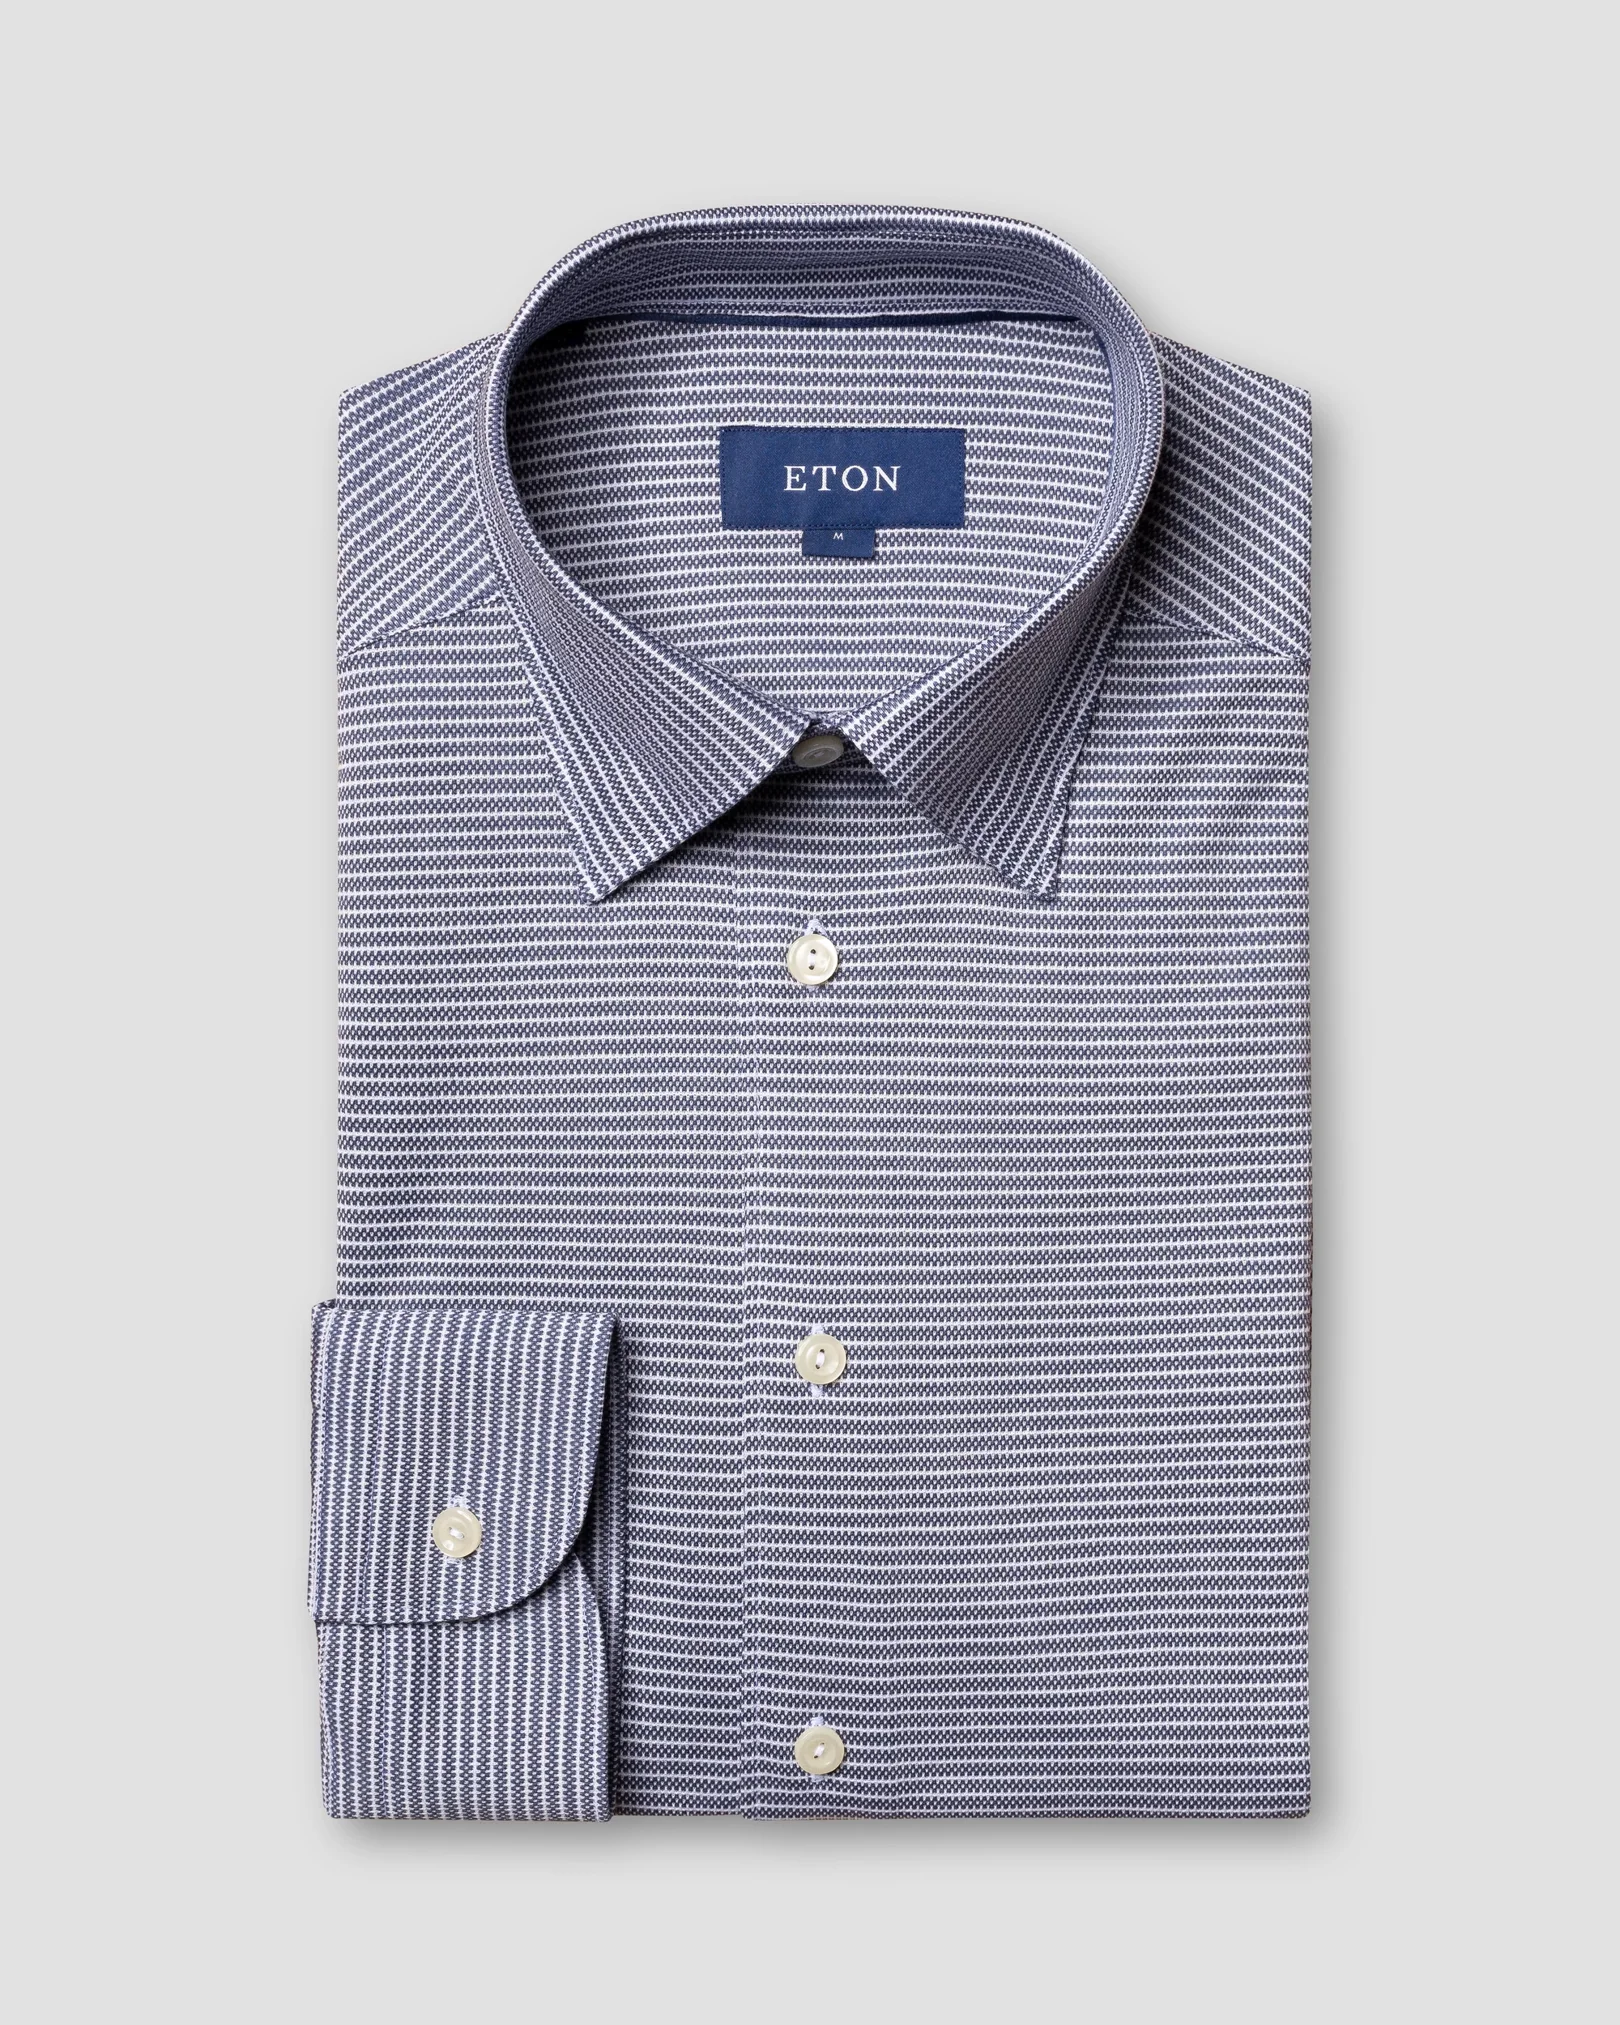 Eton - navy pin striped pique shirt long sleeved